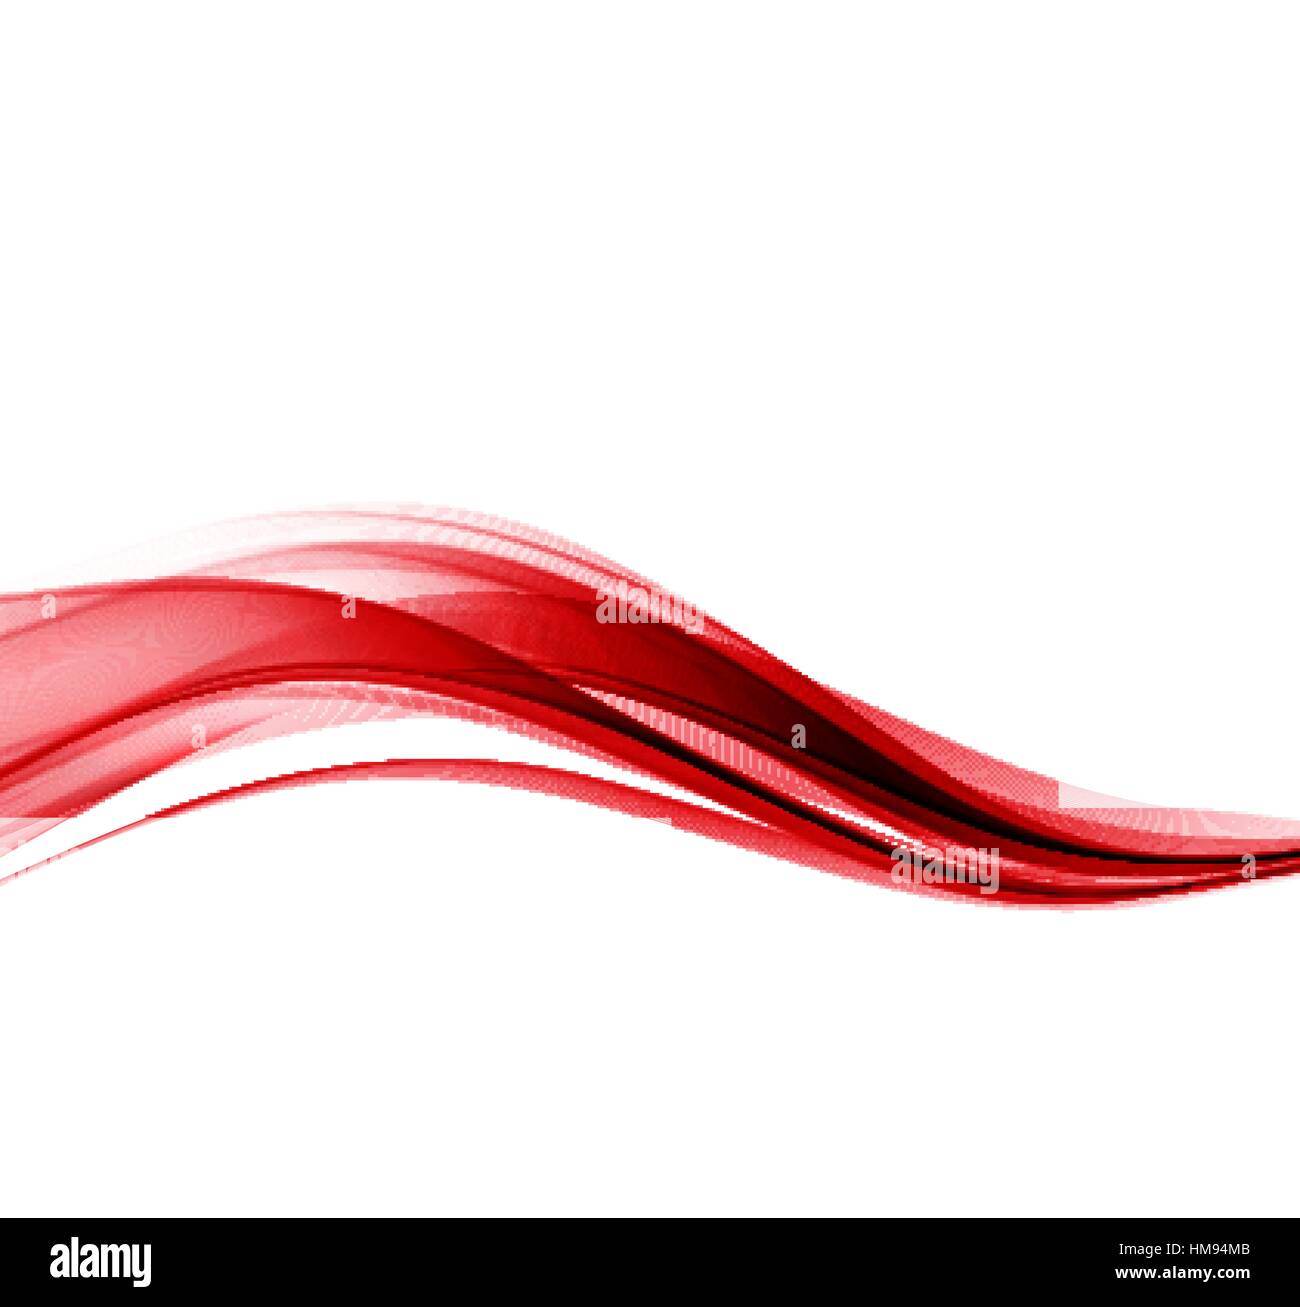 Vektor abstrakte Farbe rote Welle Design-Element. Stock Vektor